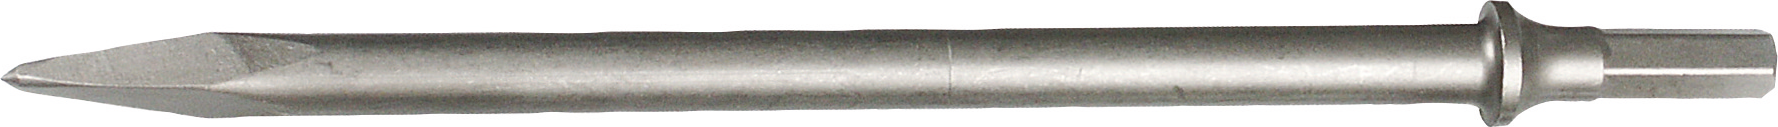 Meißel Meißelhammer Druckluft Spitzmeißel L250mm